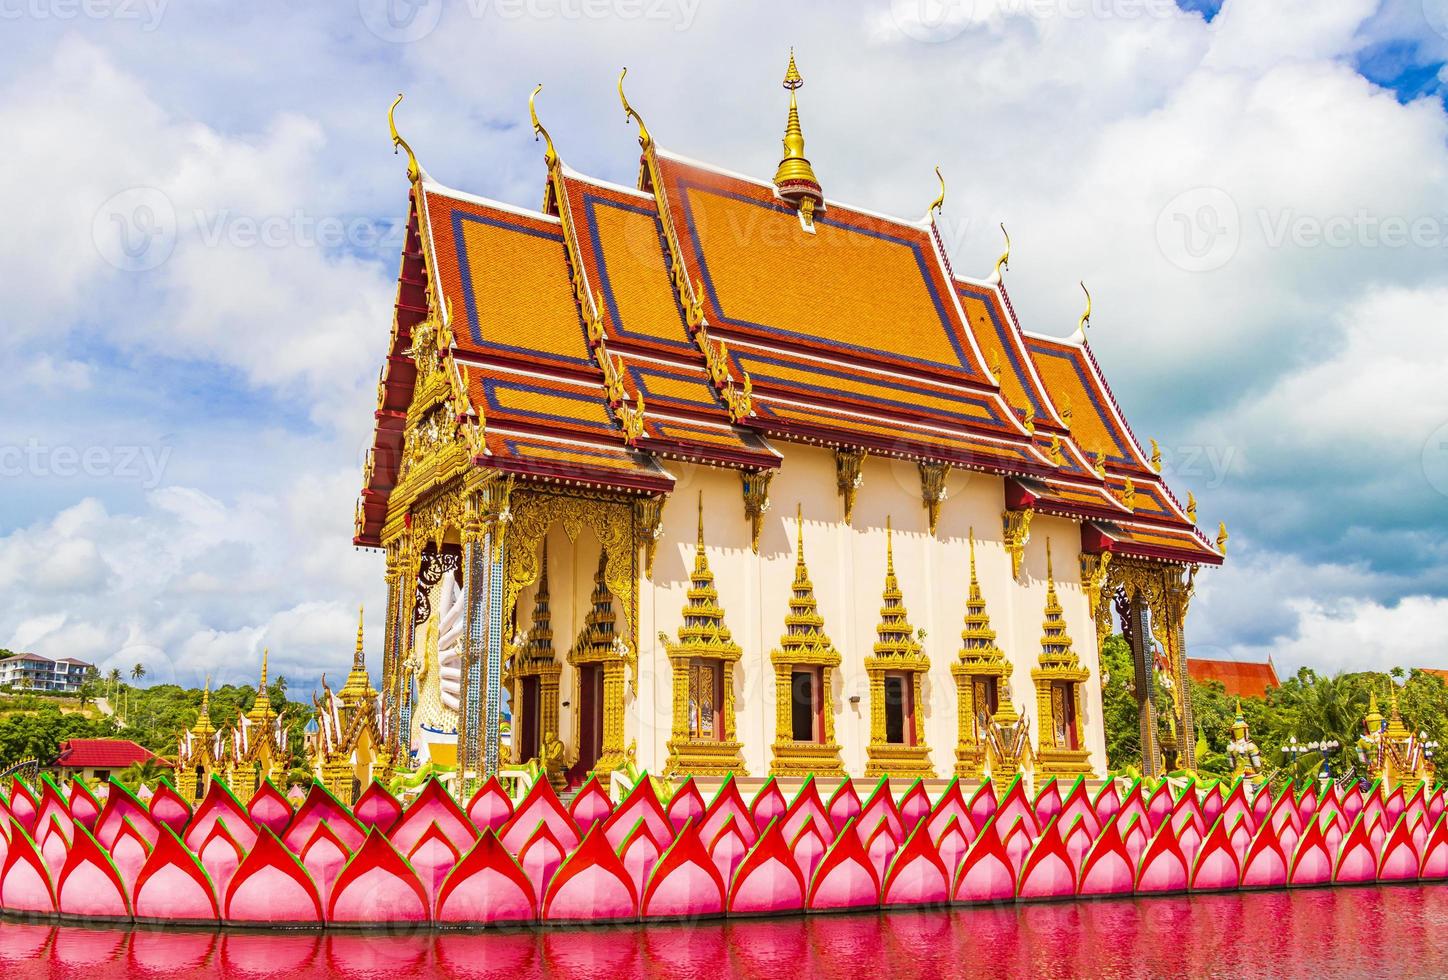 Colorida arquitectura y estatuas en el templo Wat Plai Laem en la isla de Koh Samui, Tailandia, 2018 foto